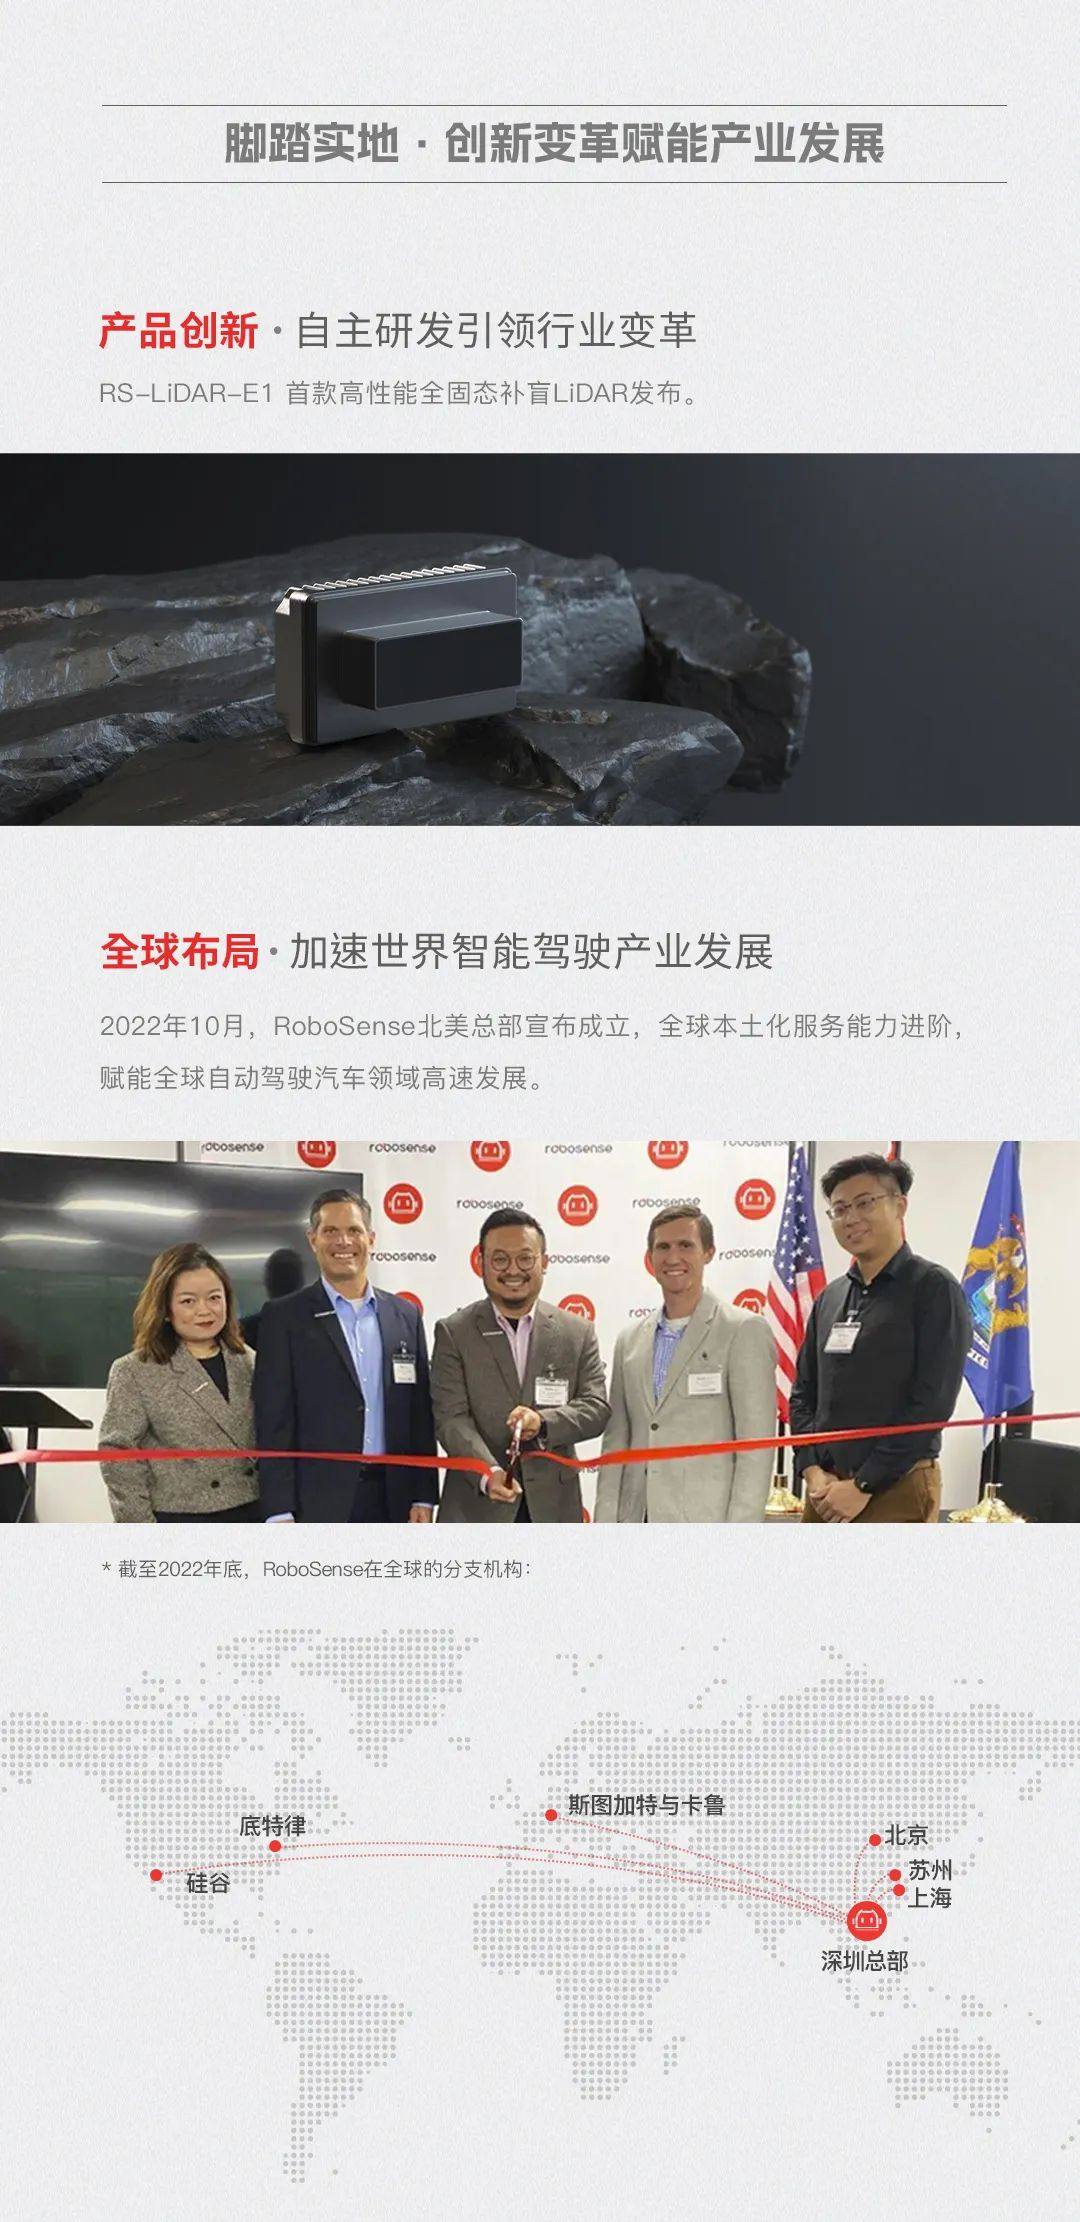 携手共建中国激光雷达品牌的世界影响力丨RoboSense 2022年度回顾